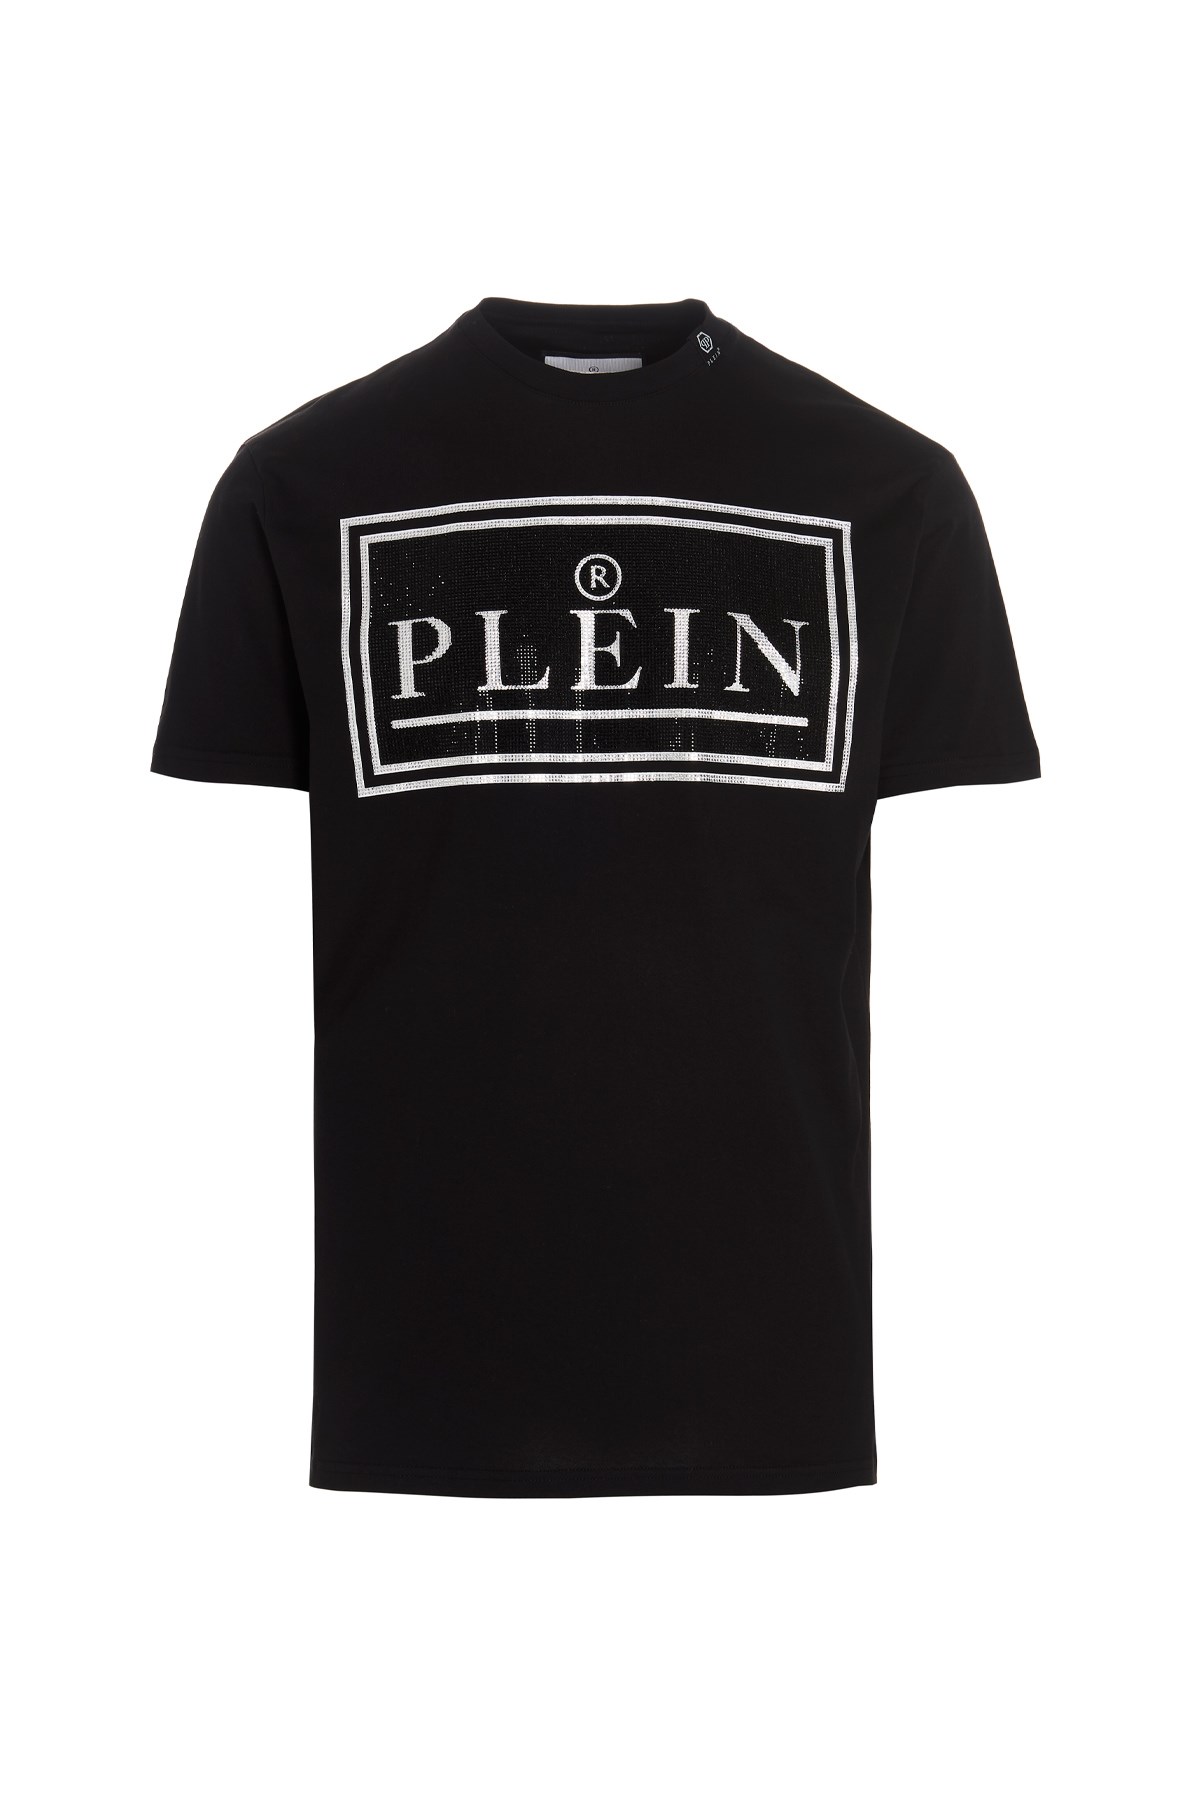 PHILIPP PLEIN T-Shirt Mit Logo Und Pailletten